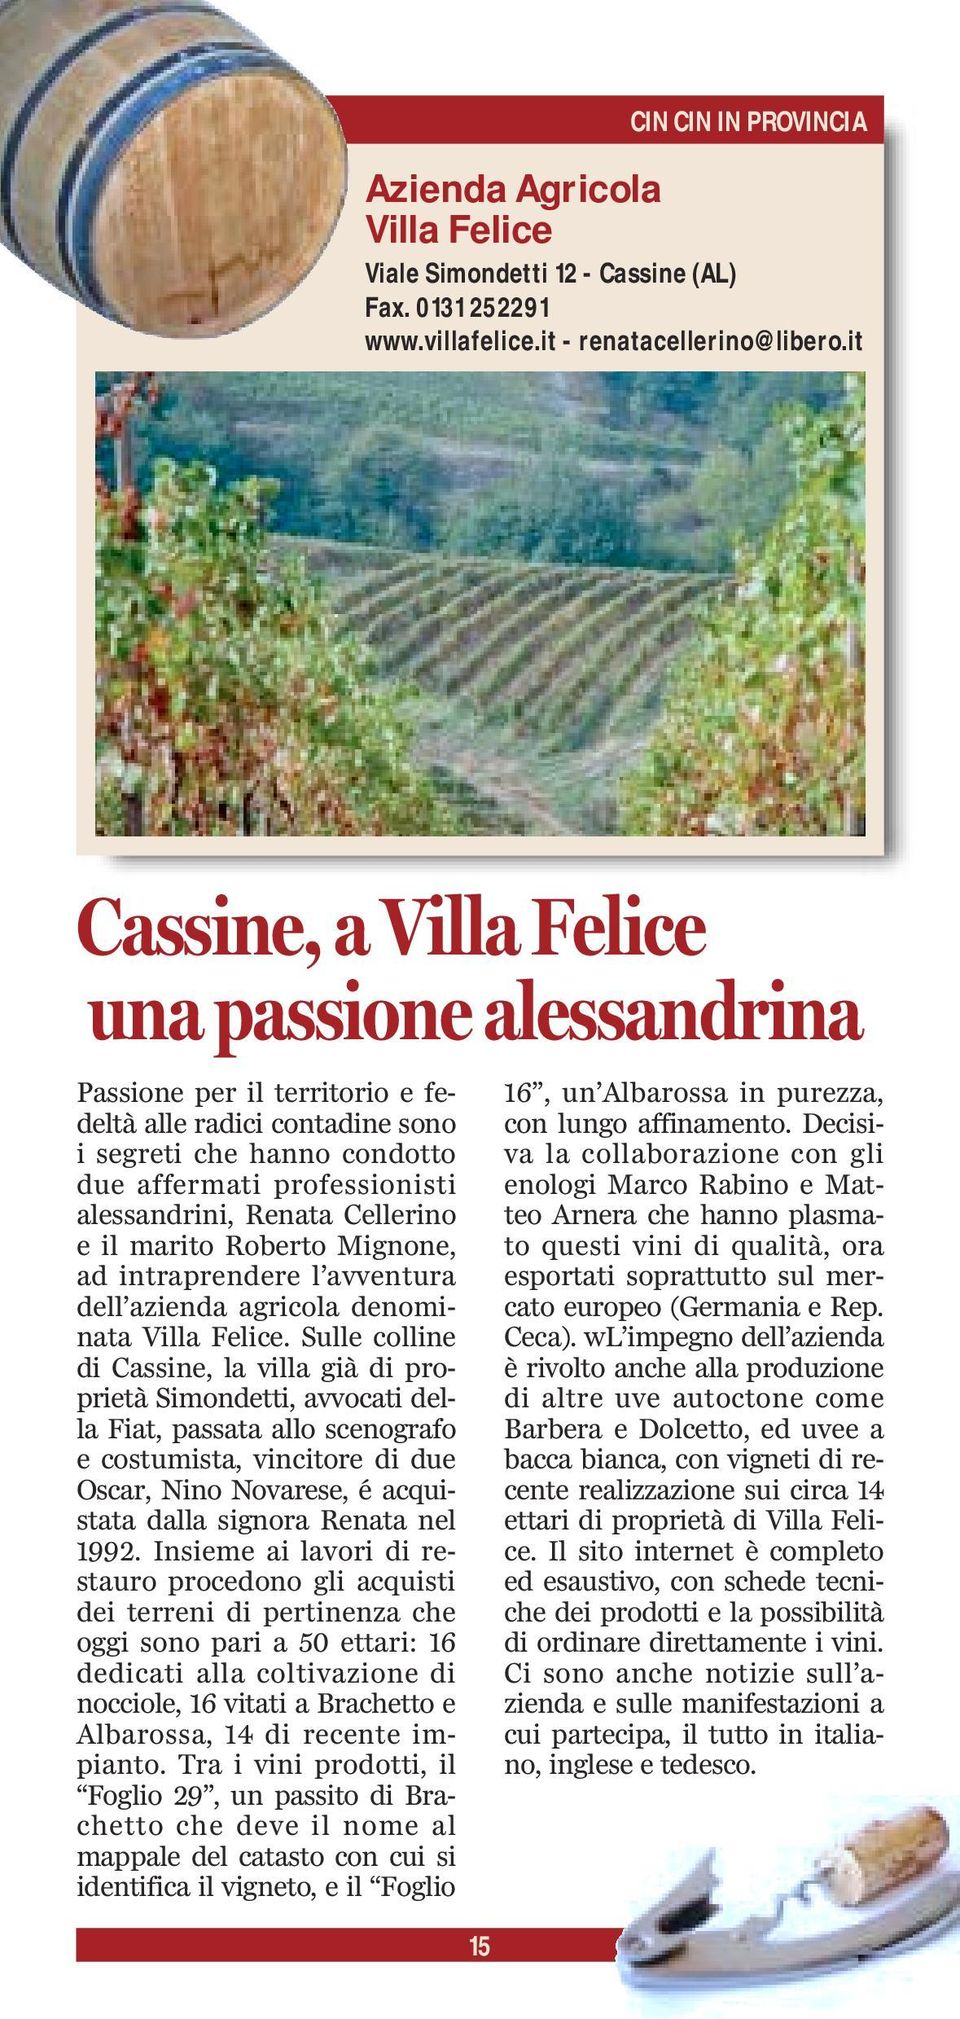 Cellerino e il marito Roberto Mignone, ad intraprendere l avventura dell azienda agricola denominata Villa Felice.